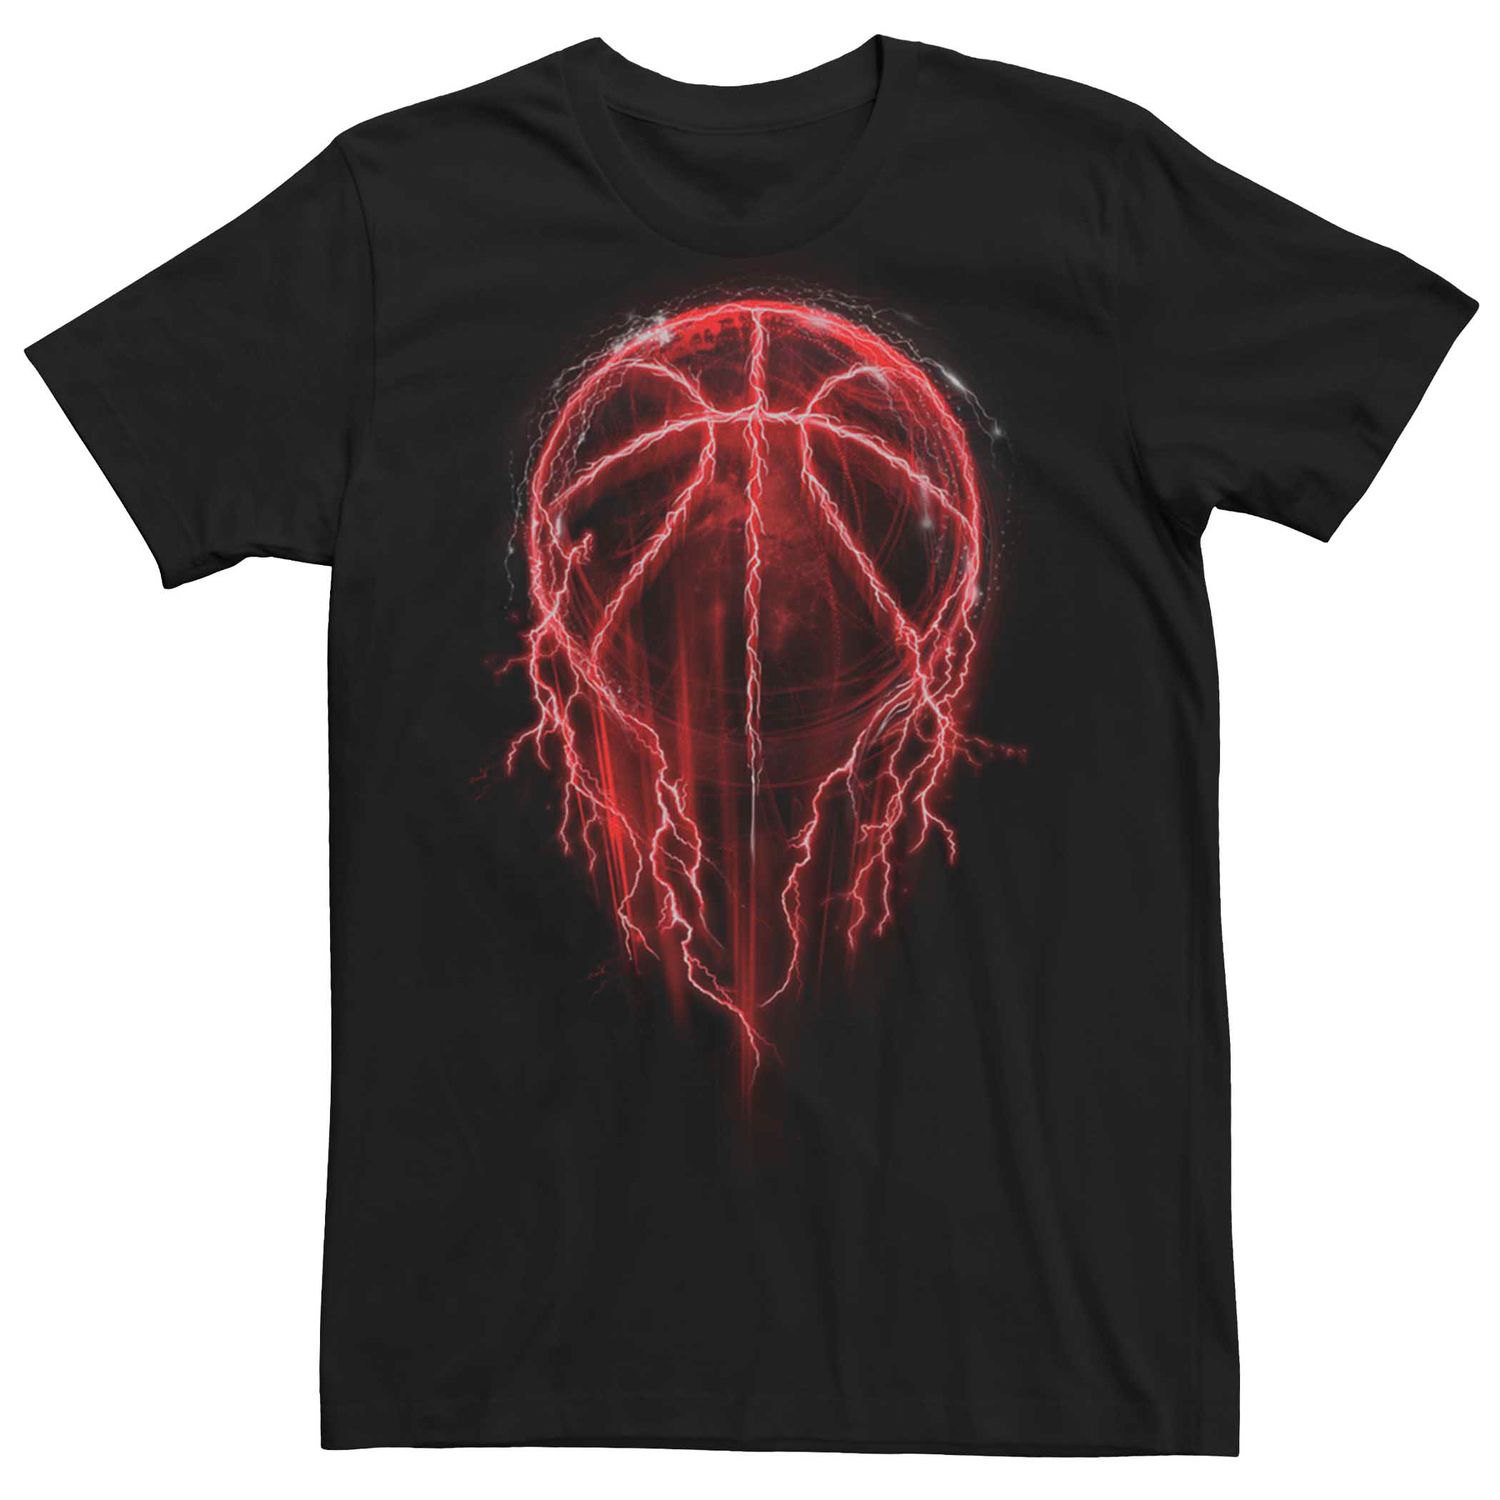 Image for Licensed Character Men's Basketball Lightning Tee Shirt at Kohl's.